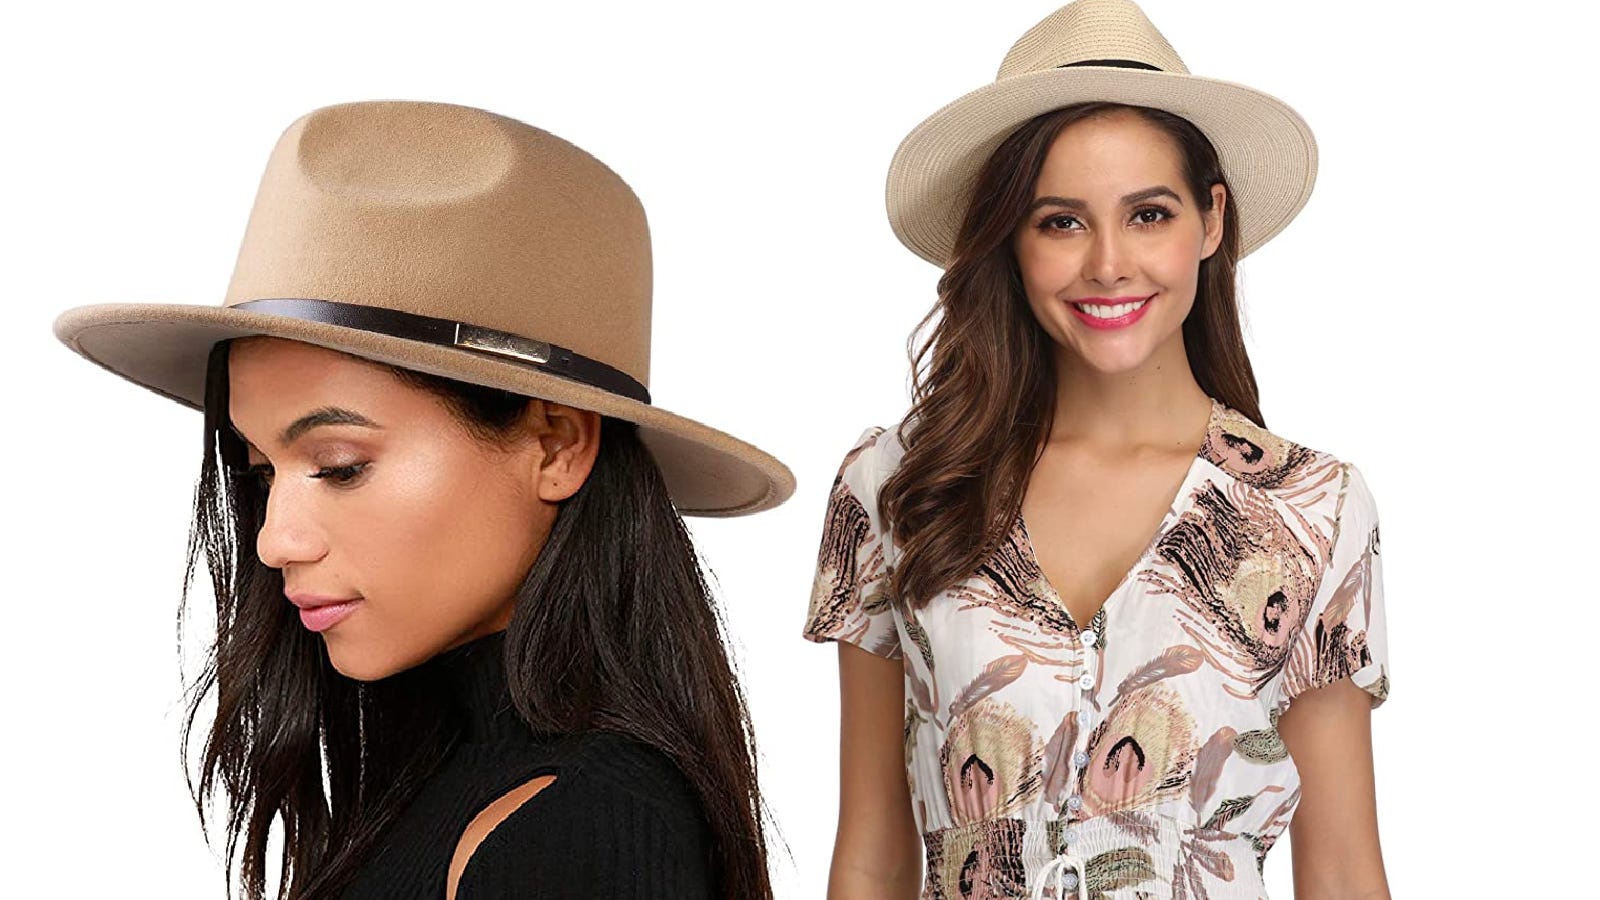 Les meilleurs chapeaux Fedora pour femmes